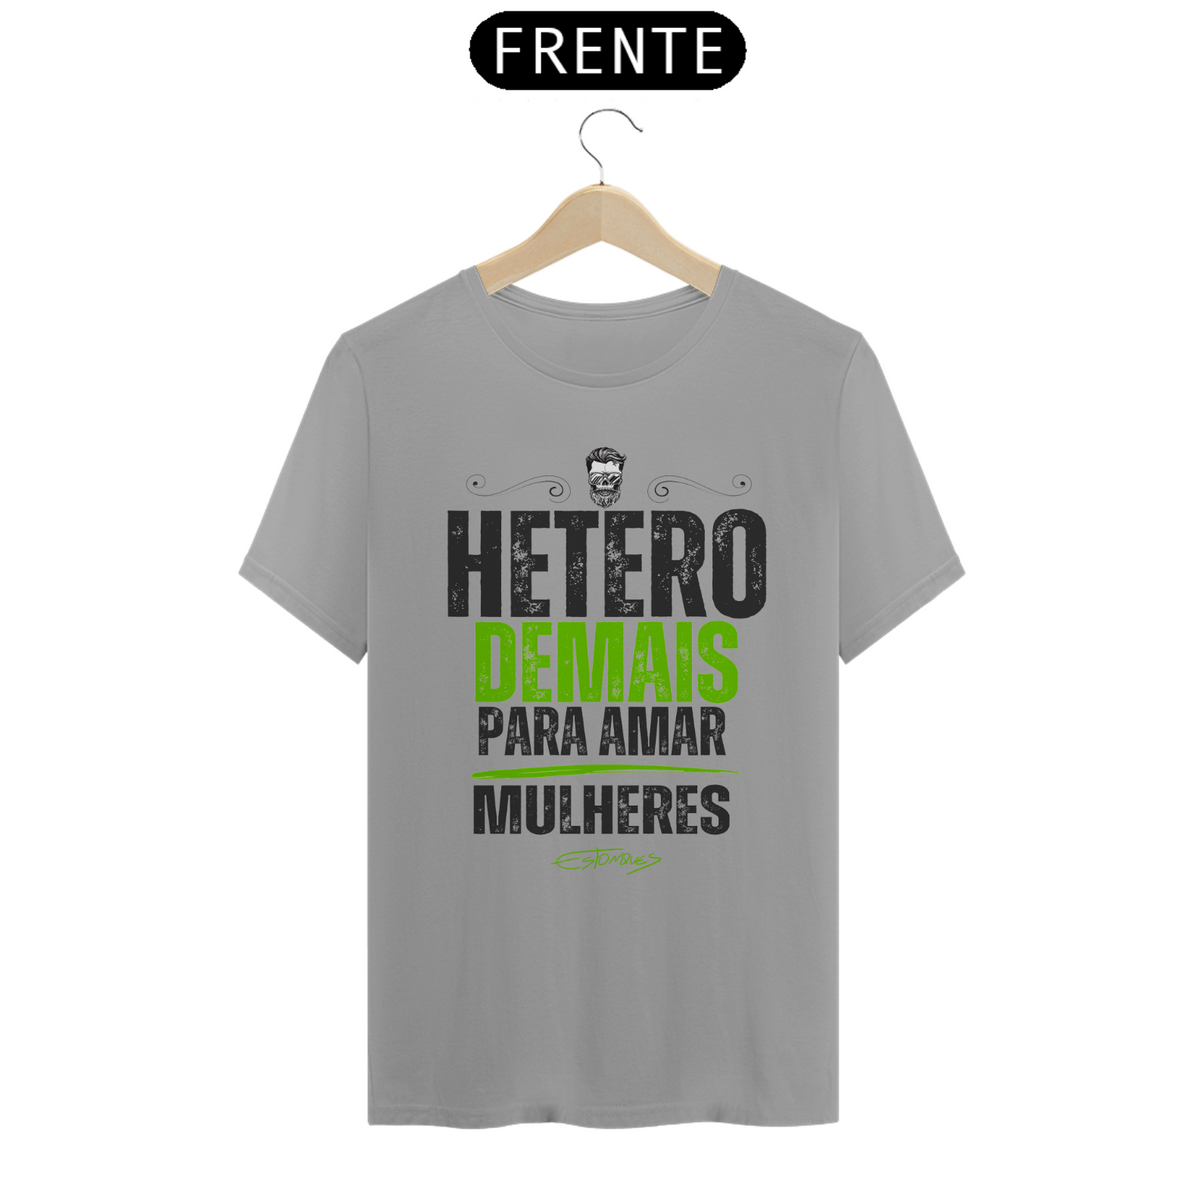 Nome do produto: Camiseta Hetero Demais para Amar Mulheres